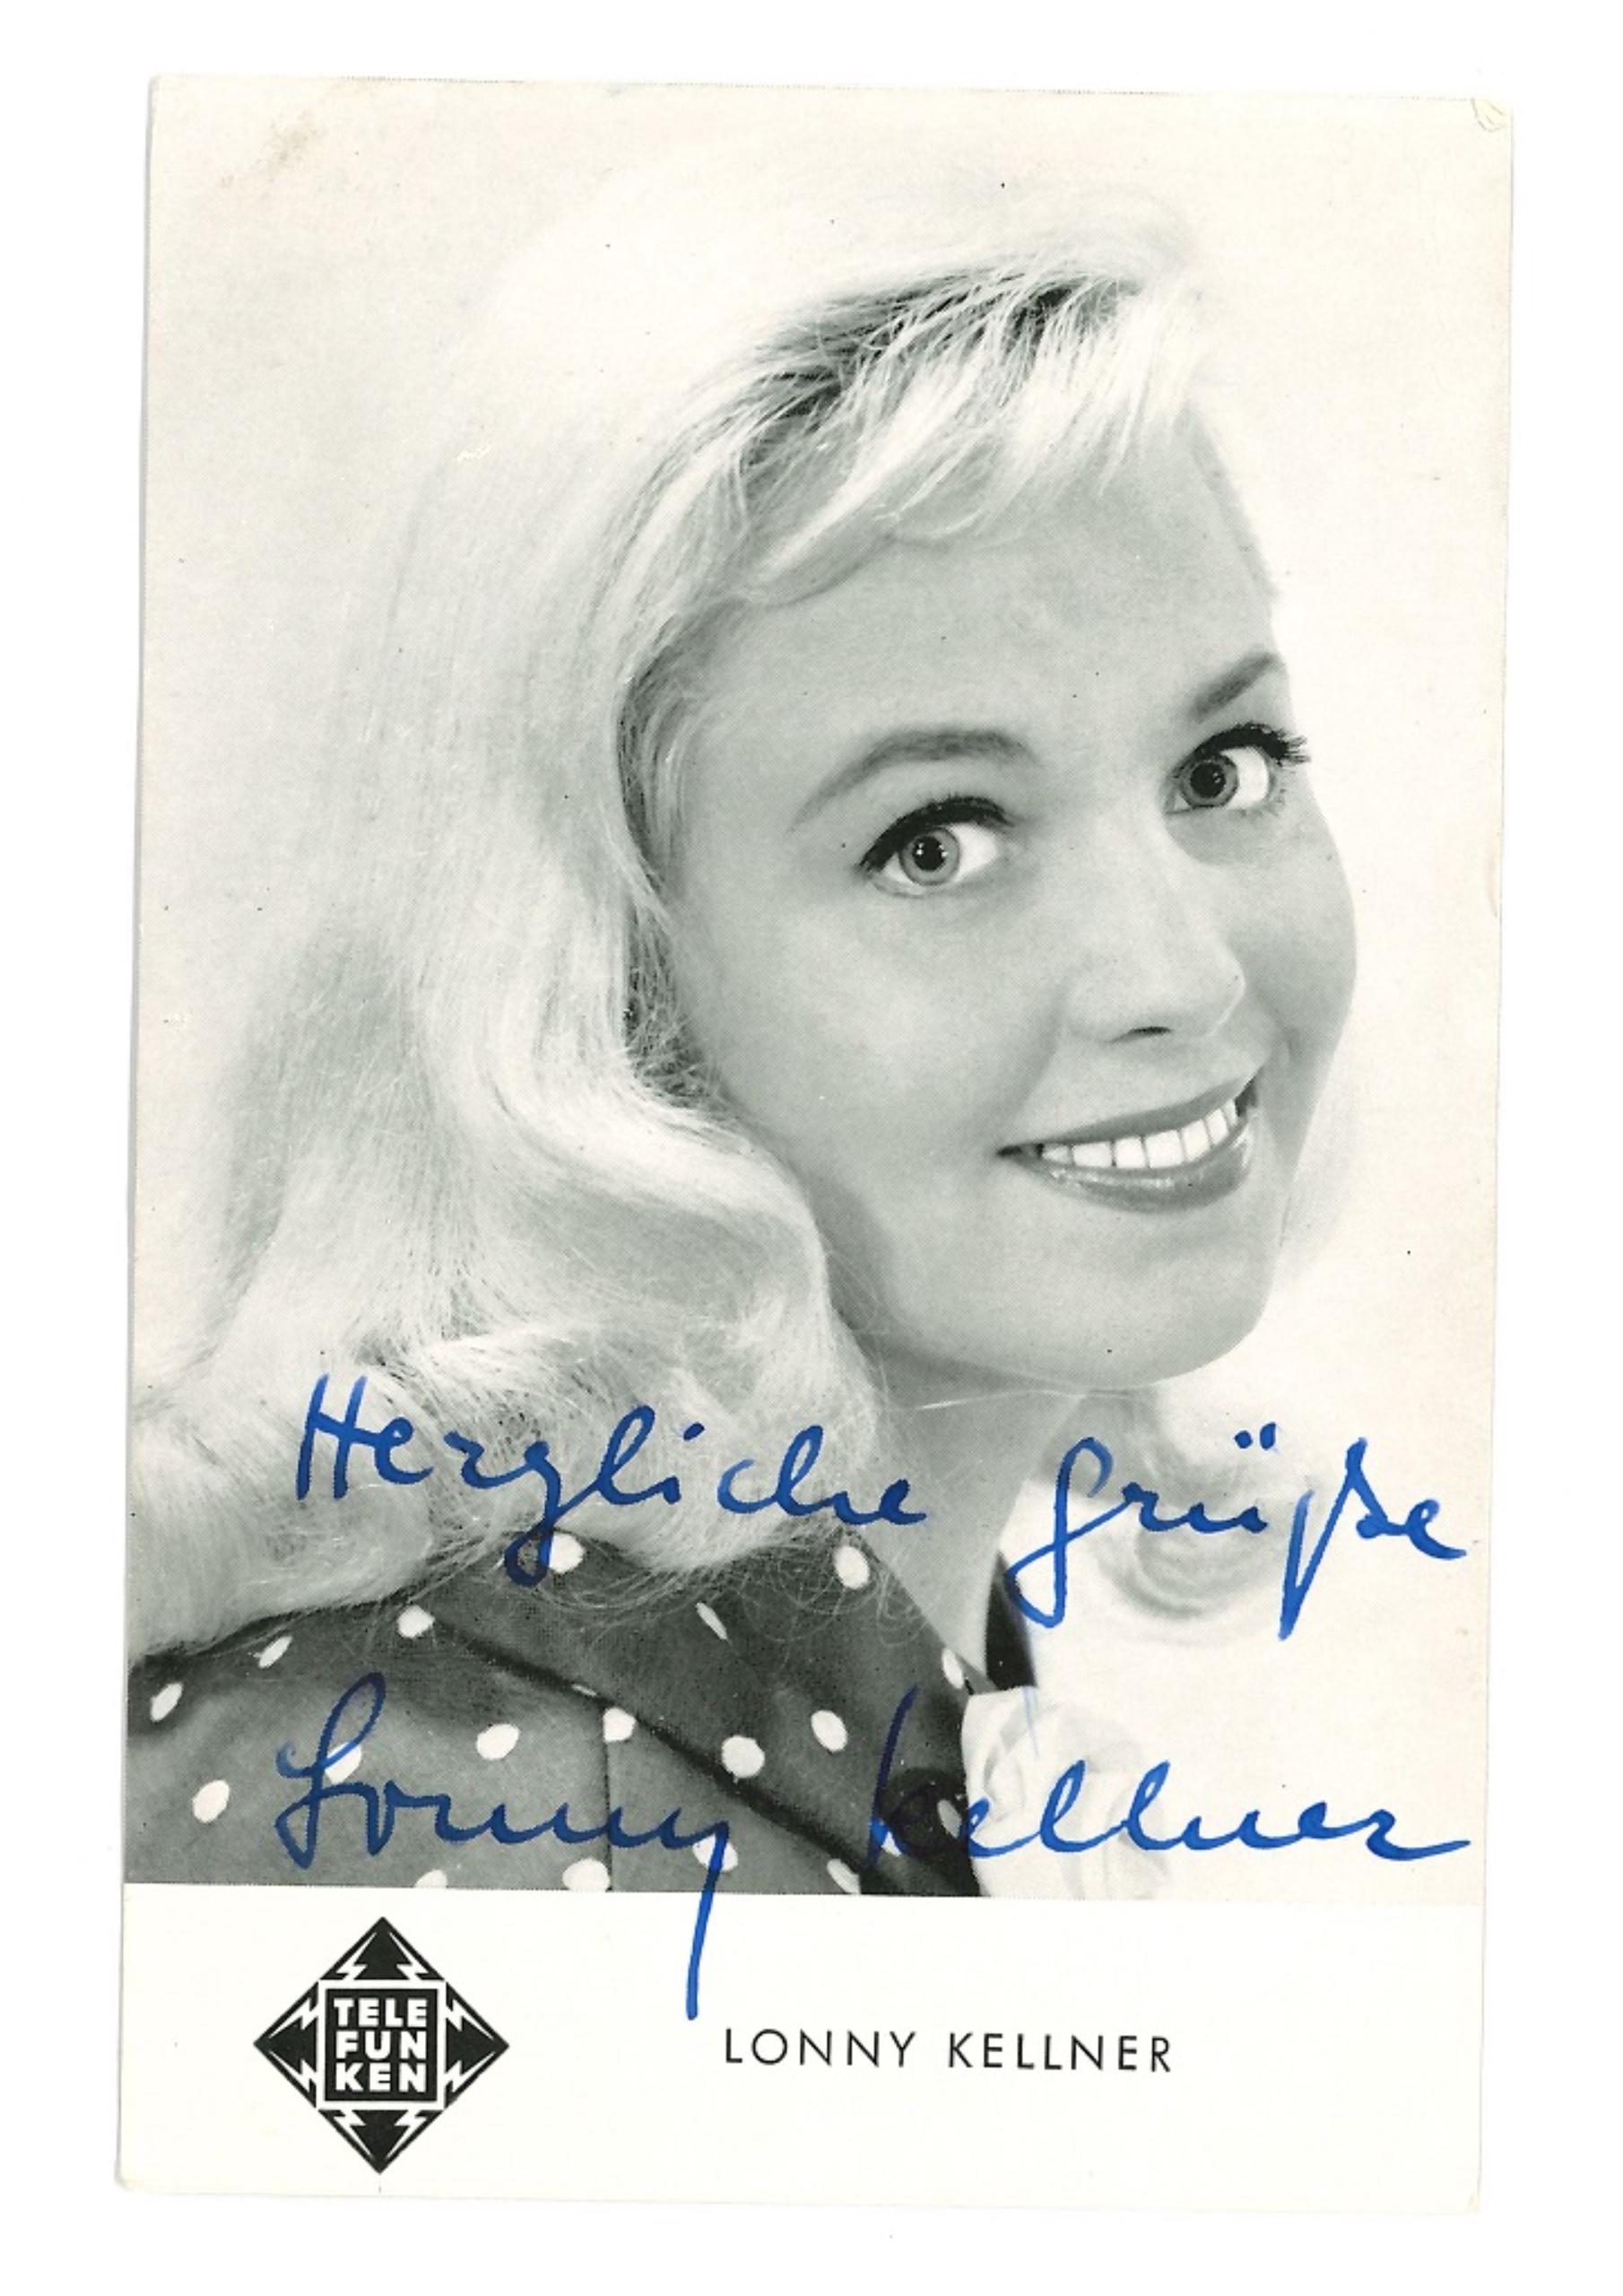 Unknown Portrait Photograph - Autographed Portrait of Lonny Kellner - Vintage b/w Postcard - 1950s